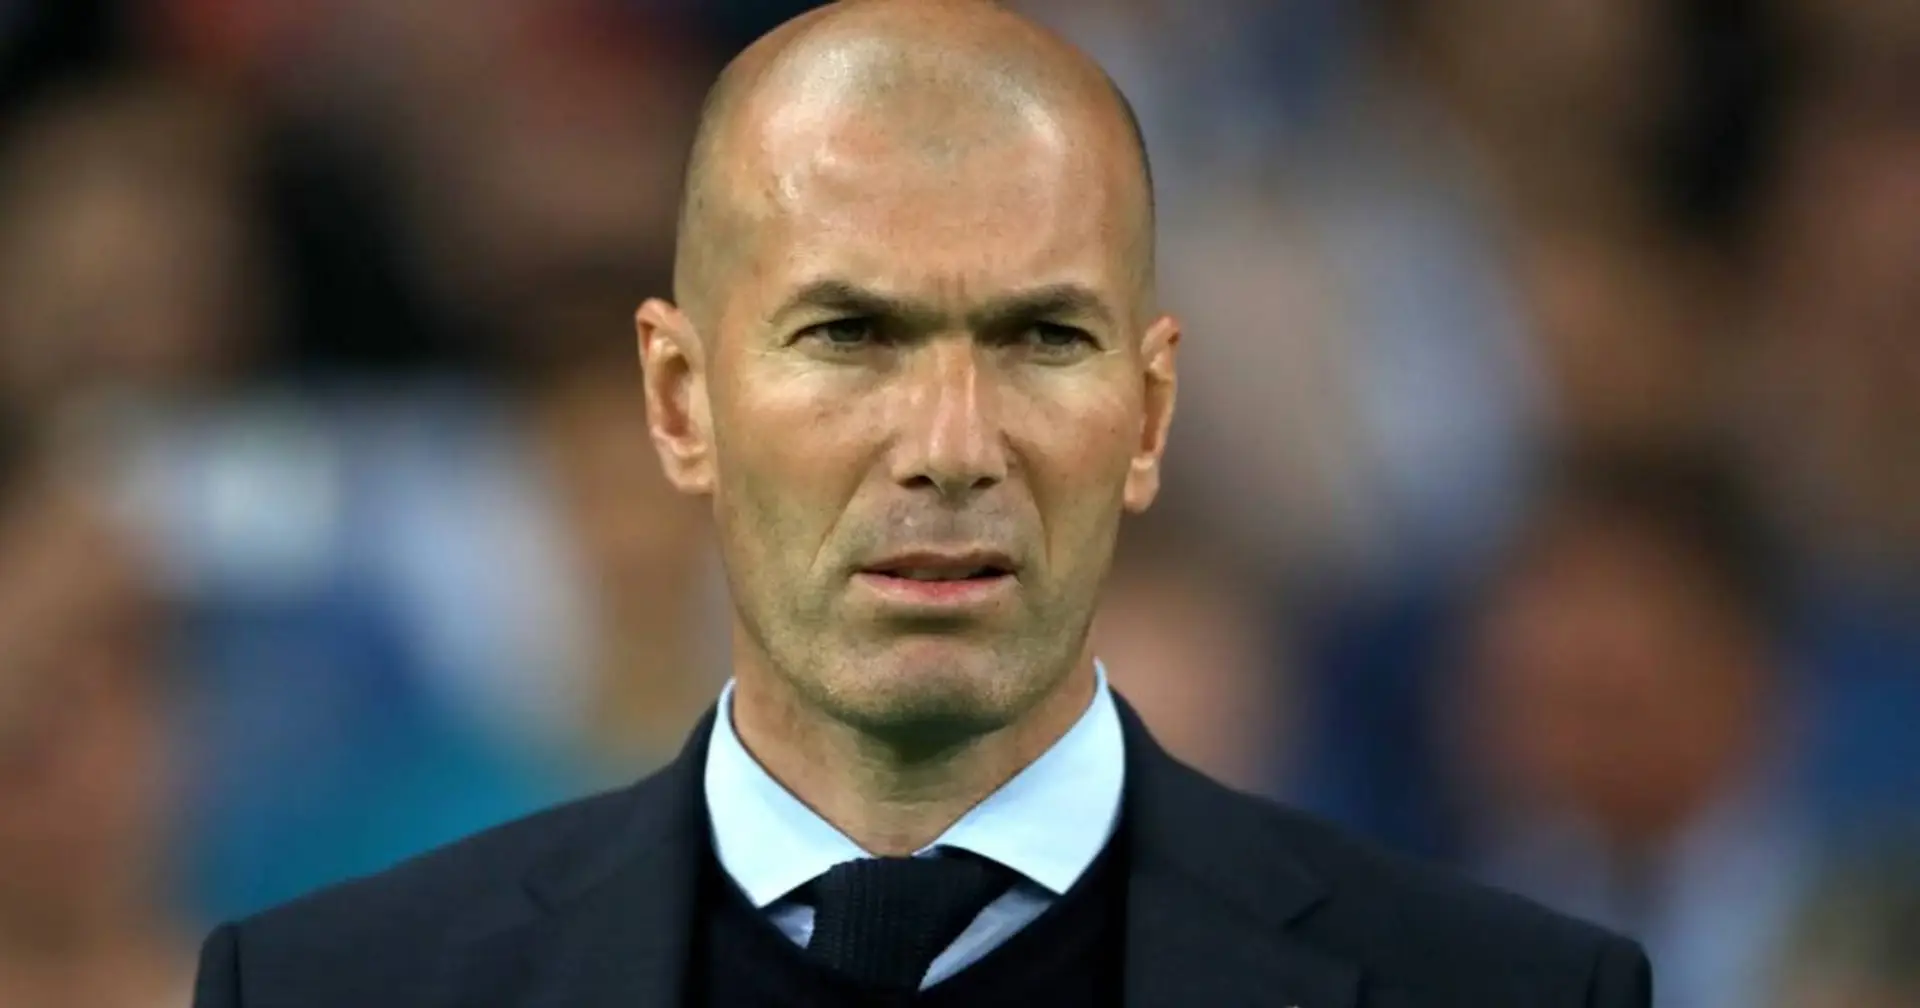 Zidane hat Interesse am Bayern-Job, mit schneller Entscheidung der Münchner ist nicht zu rechnen - Falk